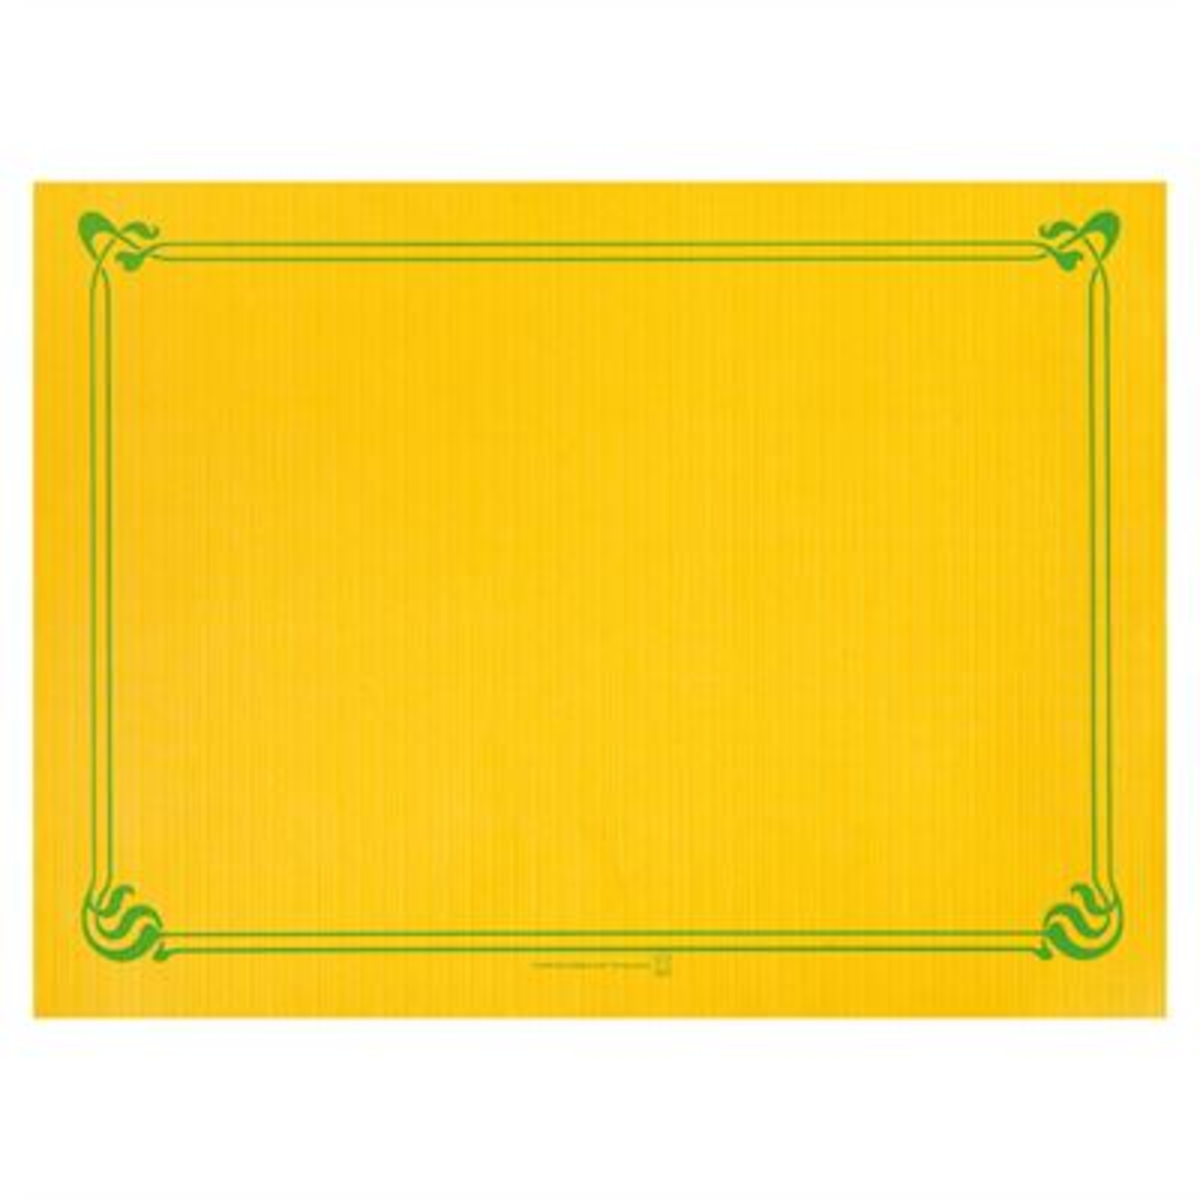 Set de table 31x43 cm jaune Soleil x 2000 Garcia de Pou - 144.06